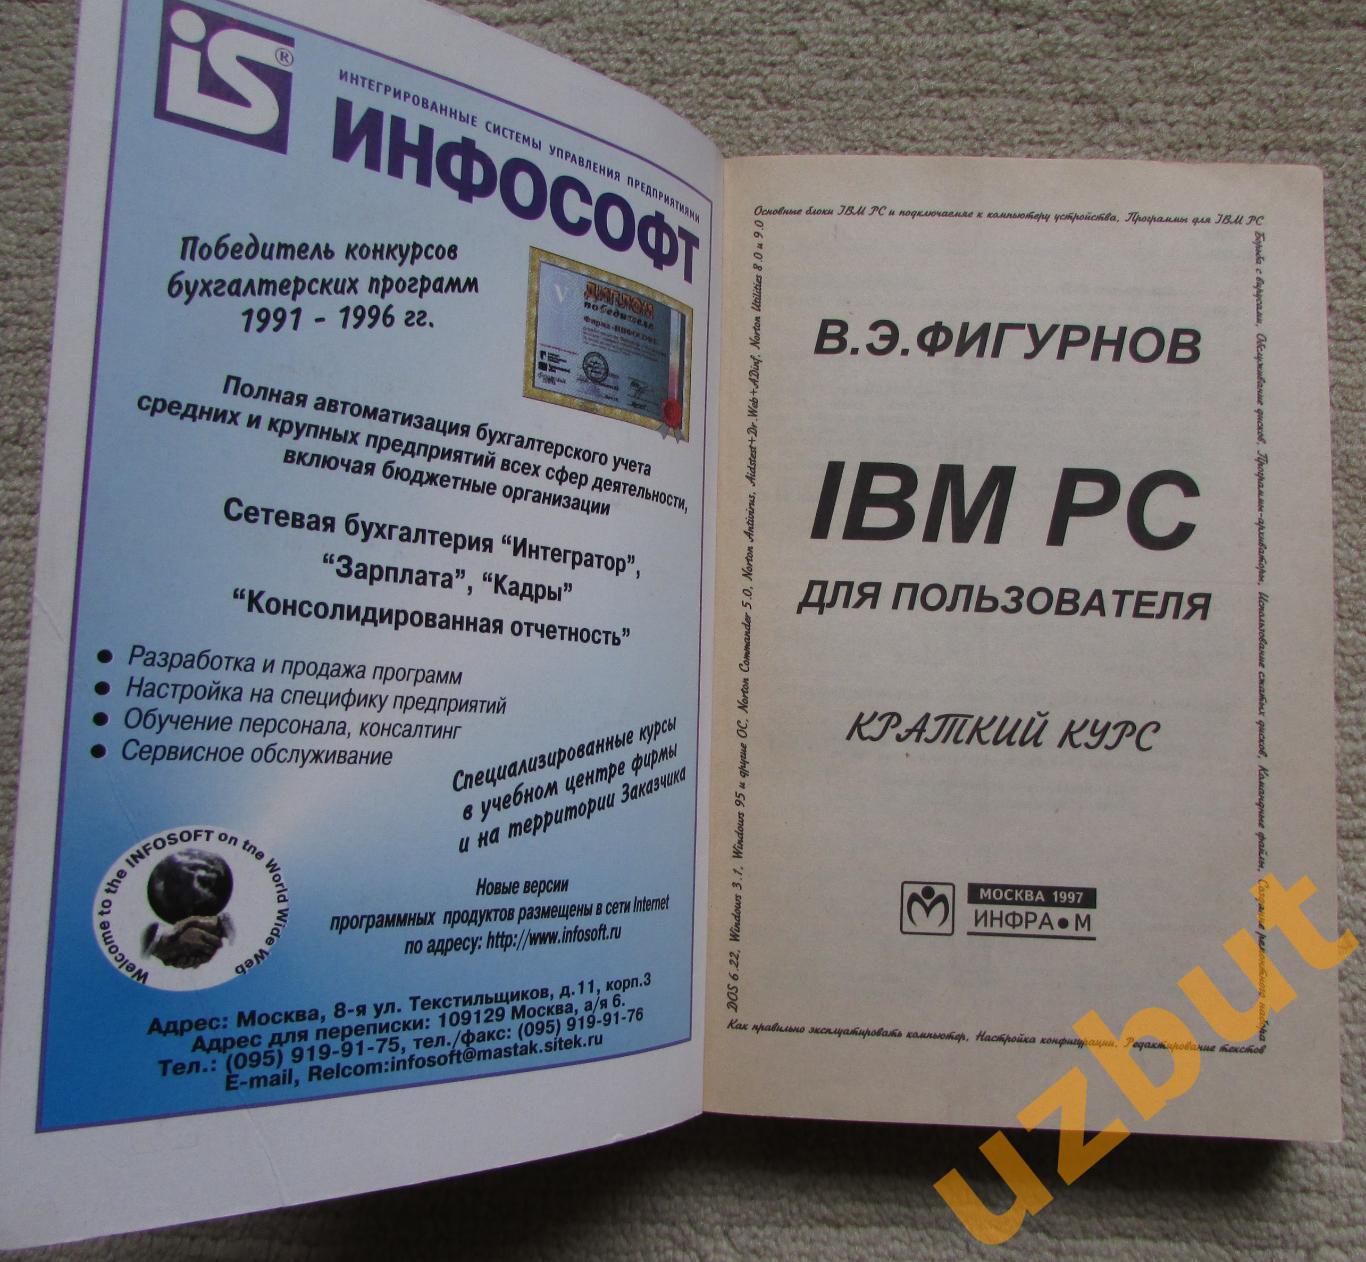 IBM PC для пользователя, В,Э, Фигурнов, 7-е издание, 1997 2